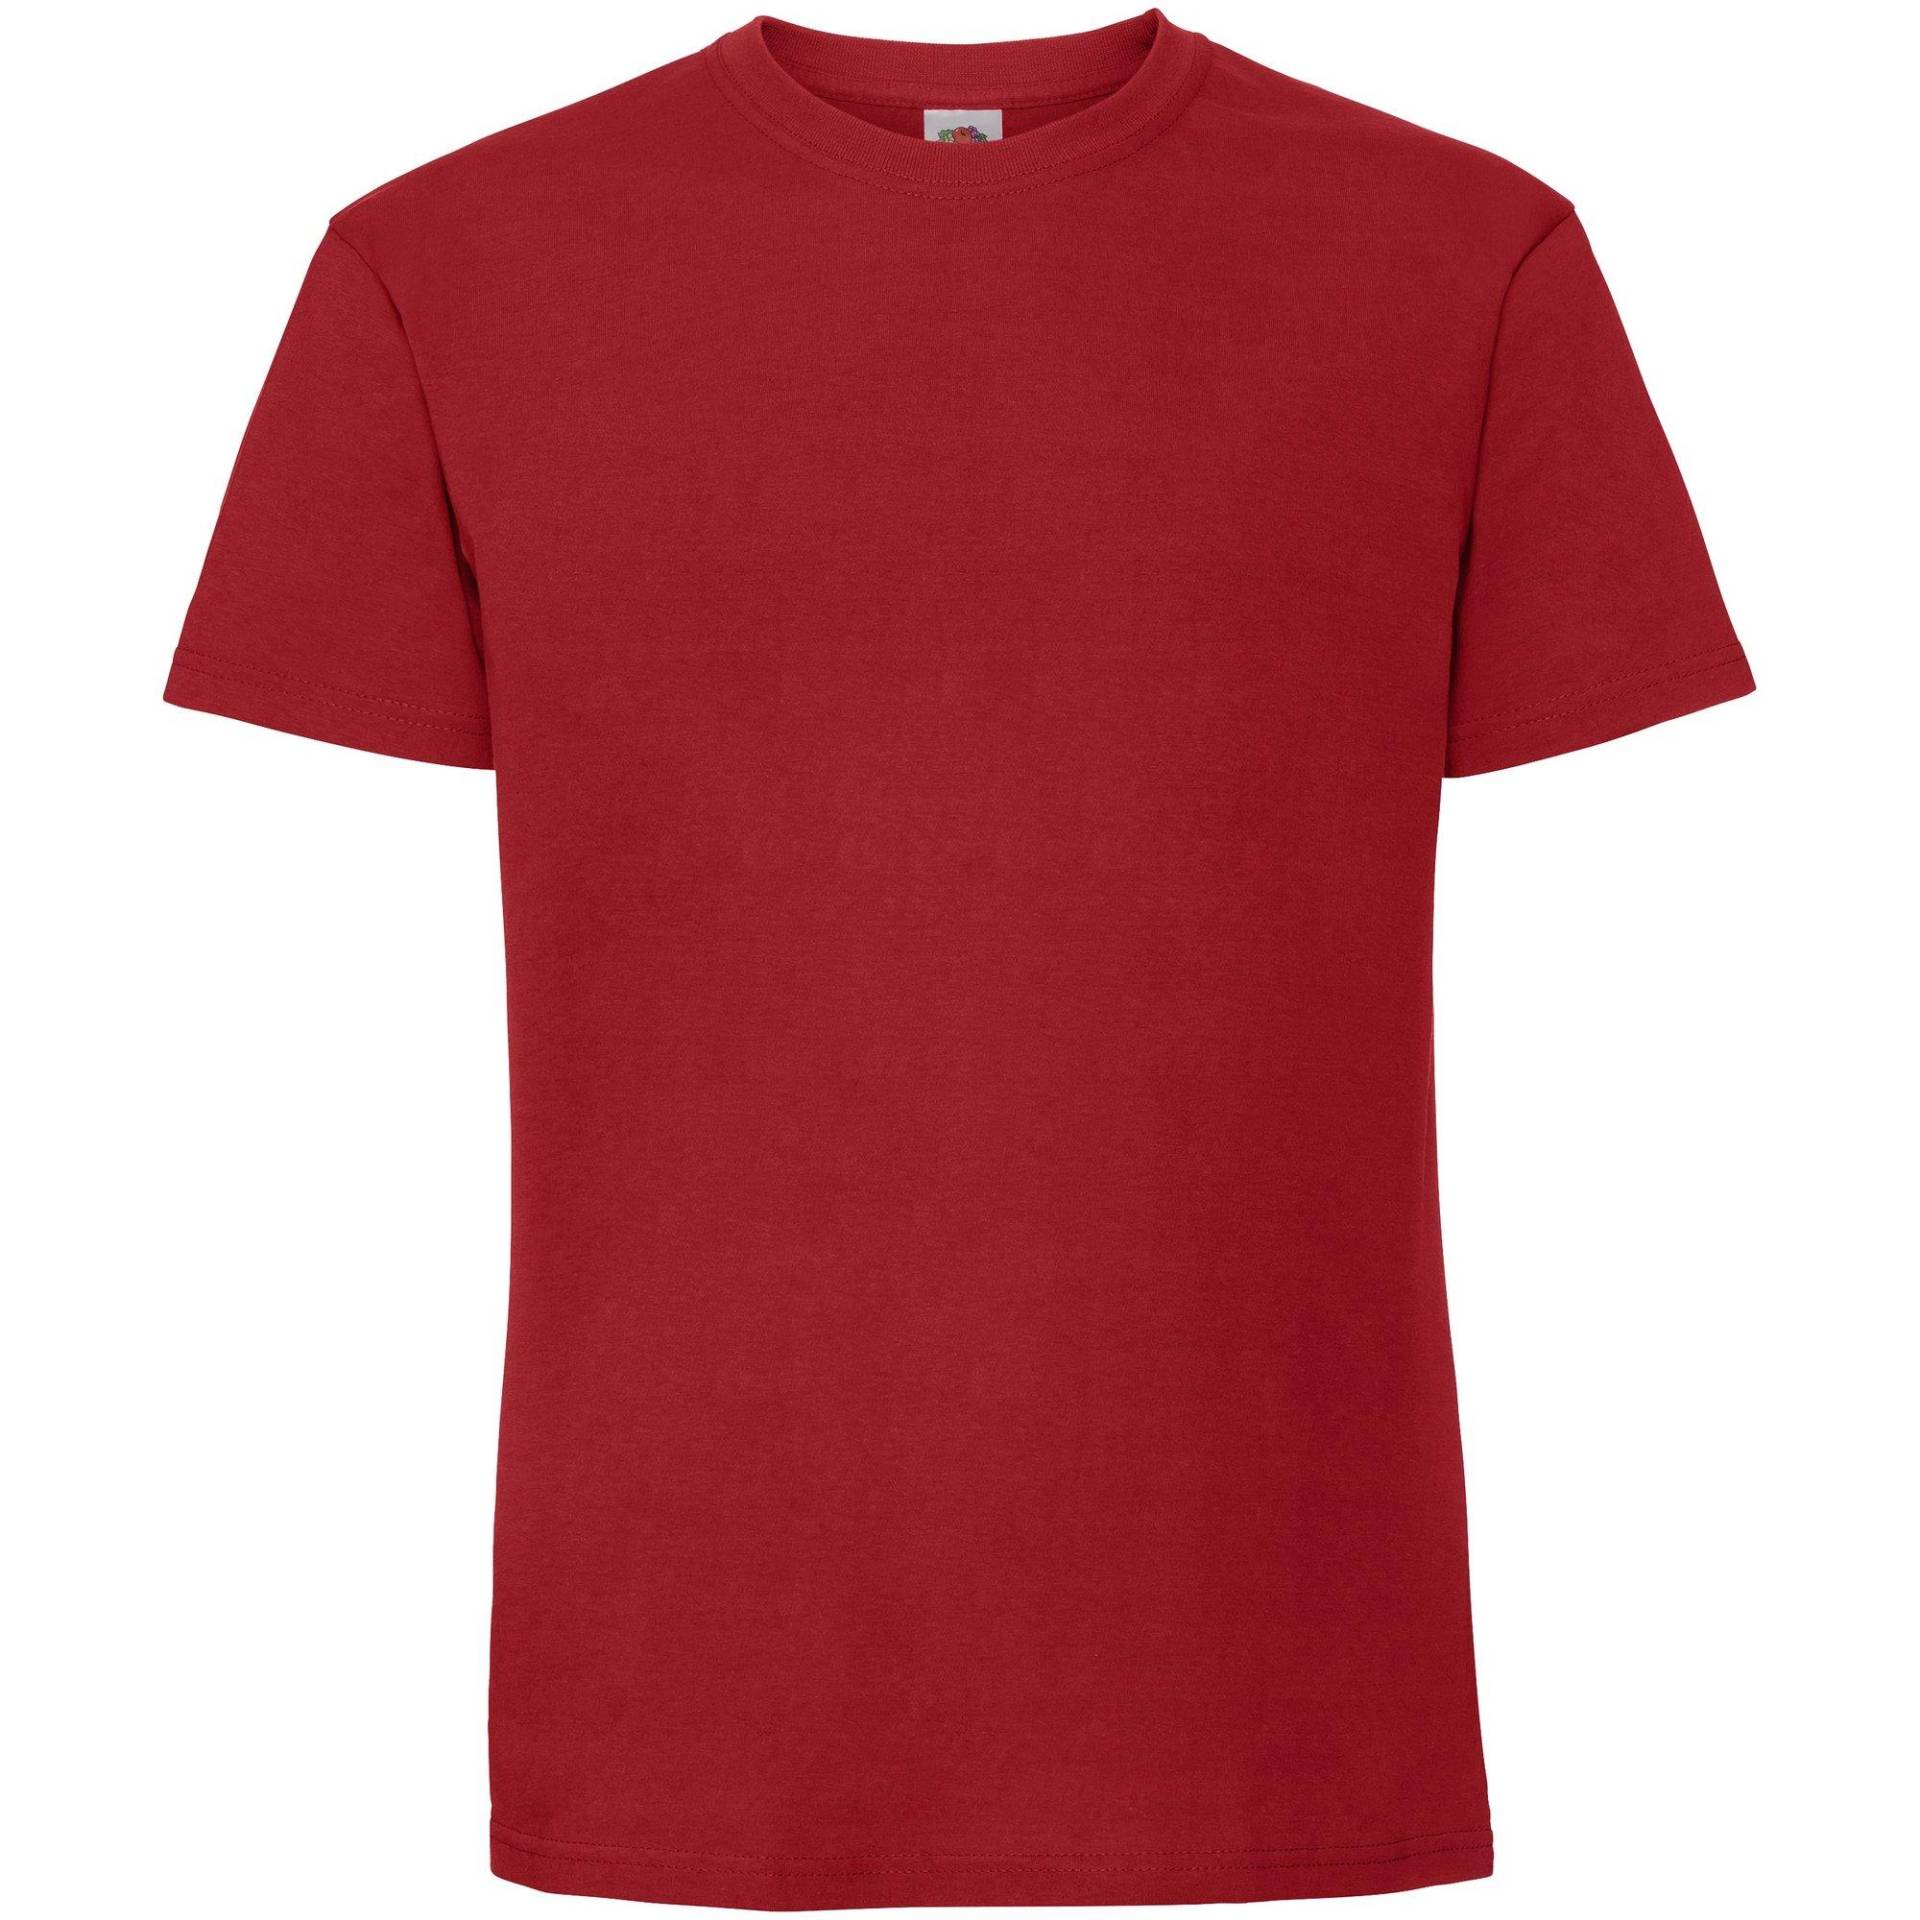 Premium Tshirt Damen Rot Bunt M von Fruit of the Loom